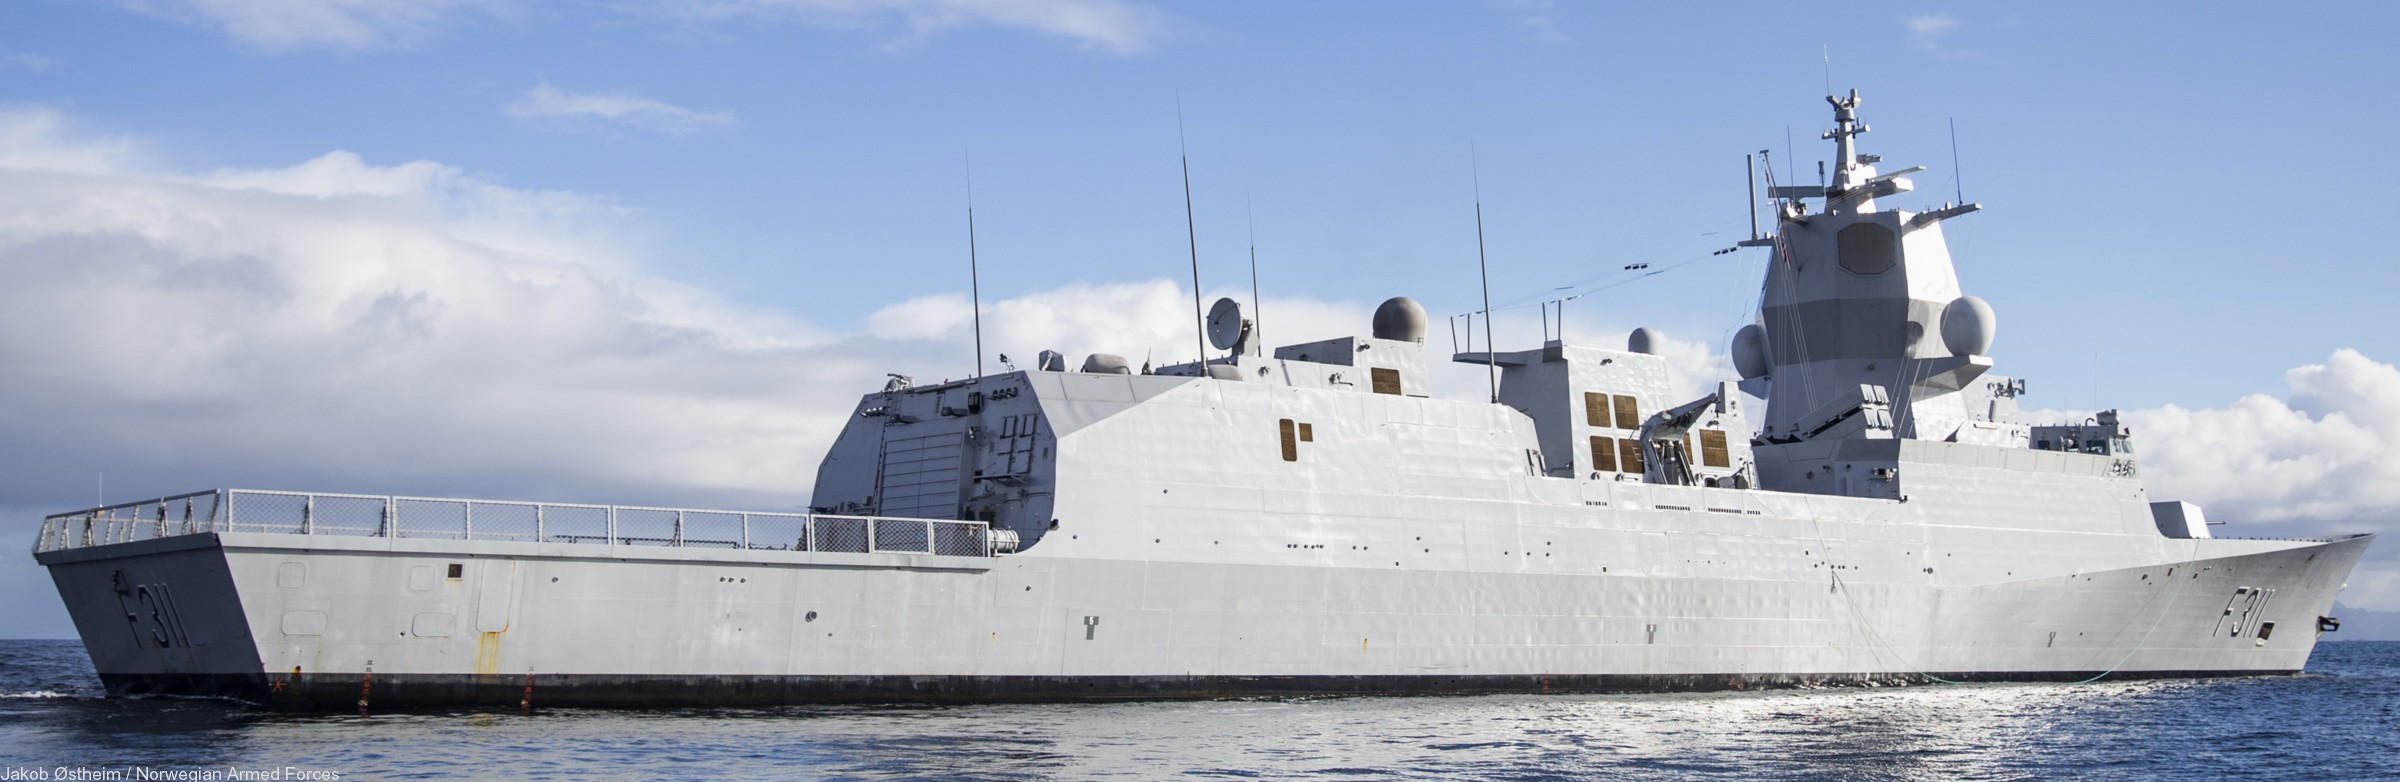 f-311 hnoms roald amundsen knm nansen class frigate royal norwegian navy sjoforsvaret 42 nato snmg